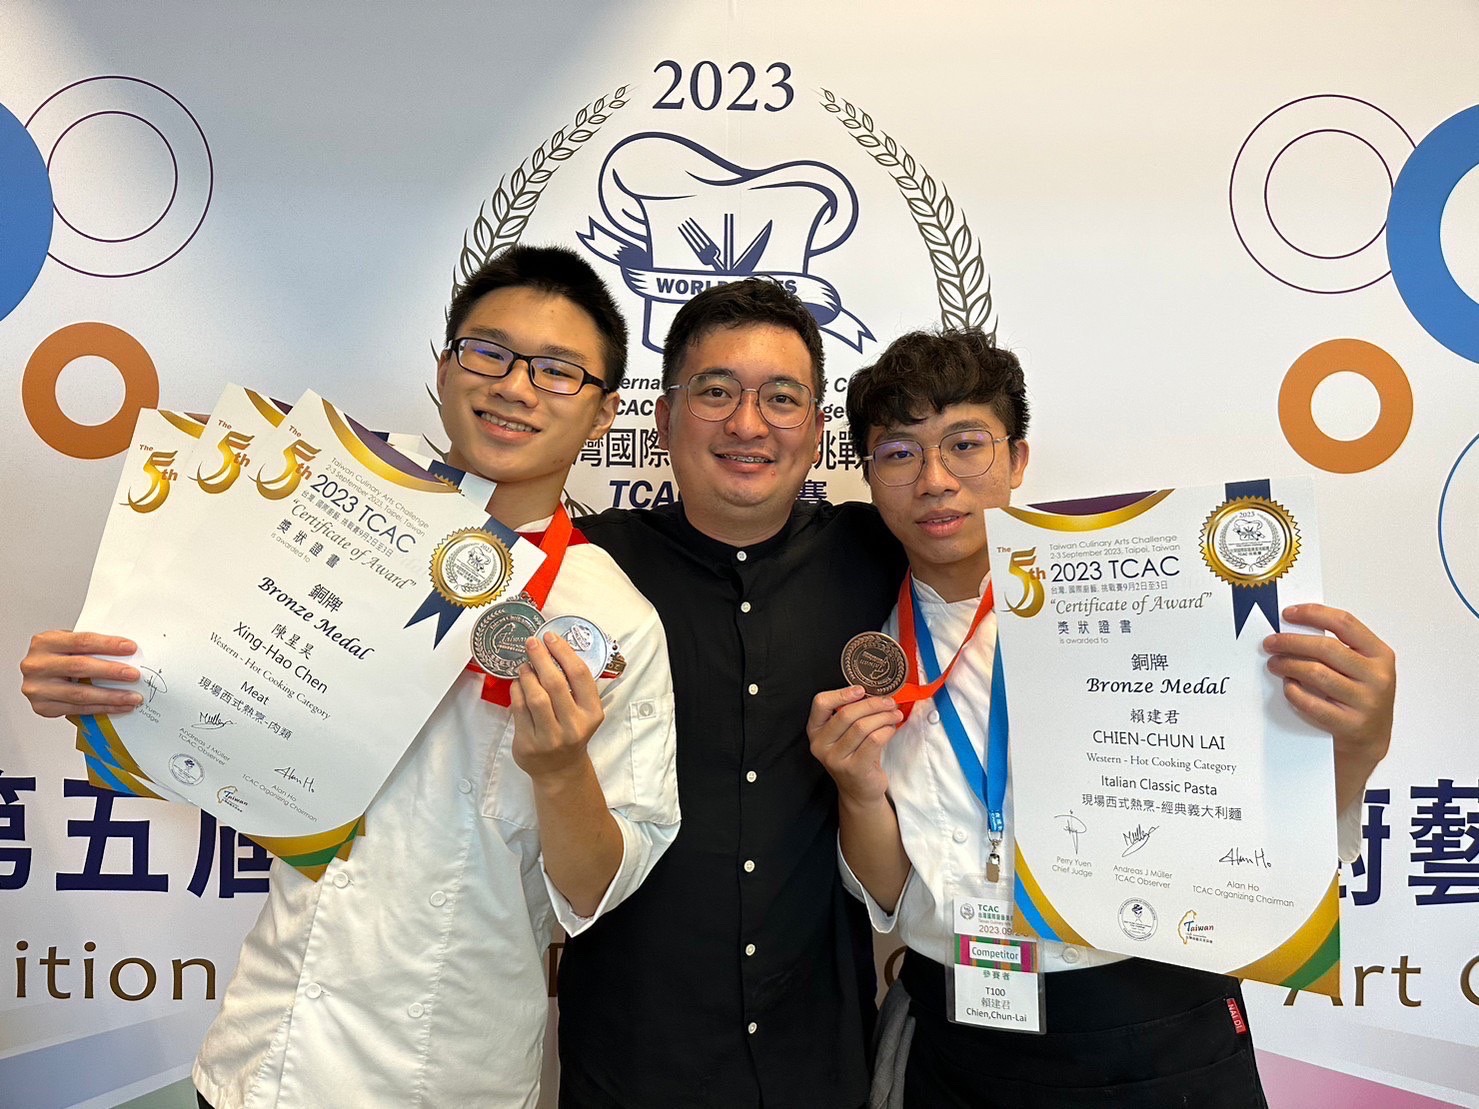 賀! 本系2023TCAC台灣國際廚藝美食挑戰賽獲得佳績!